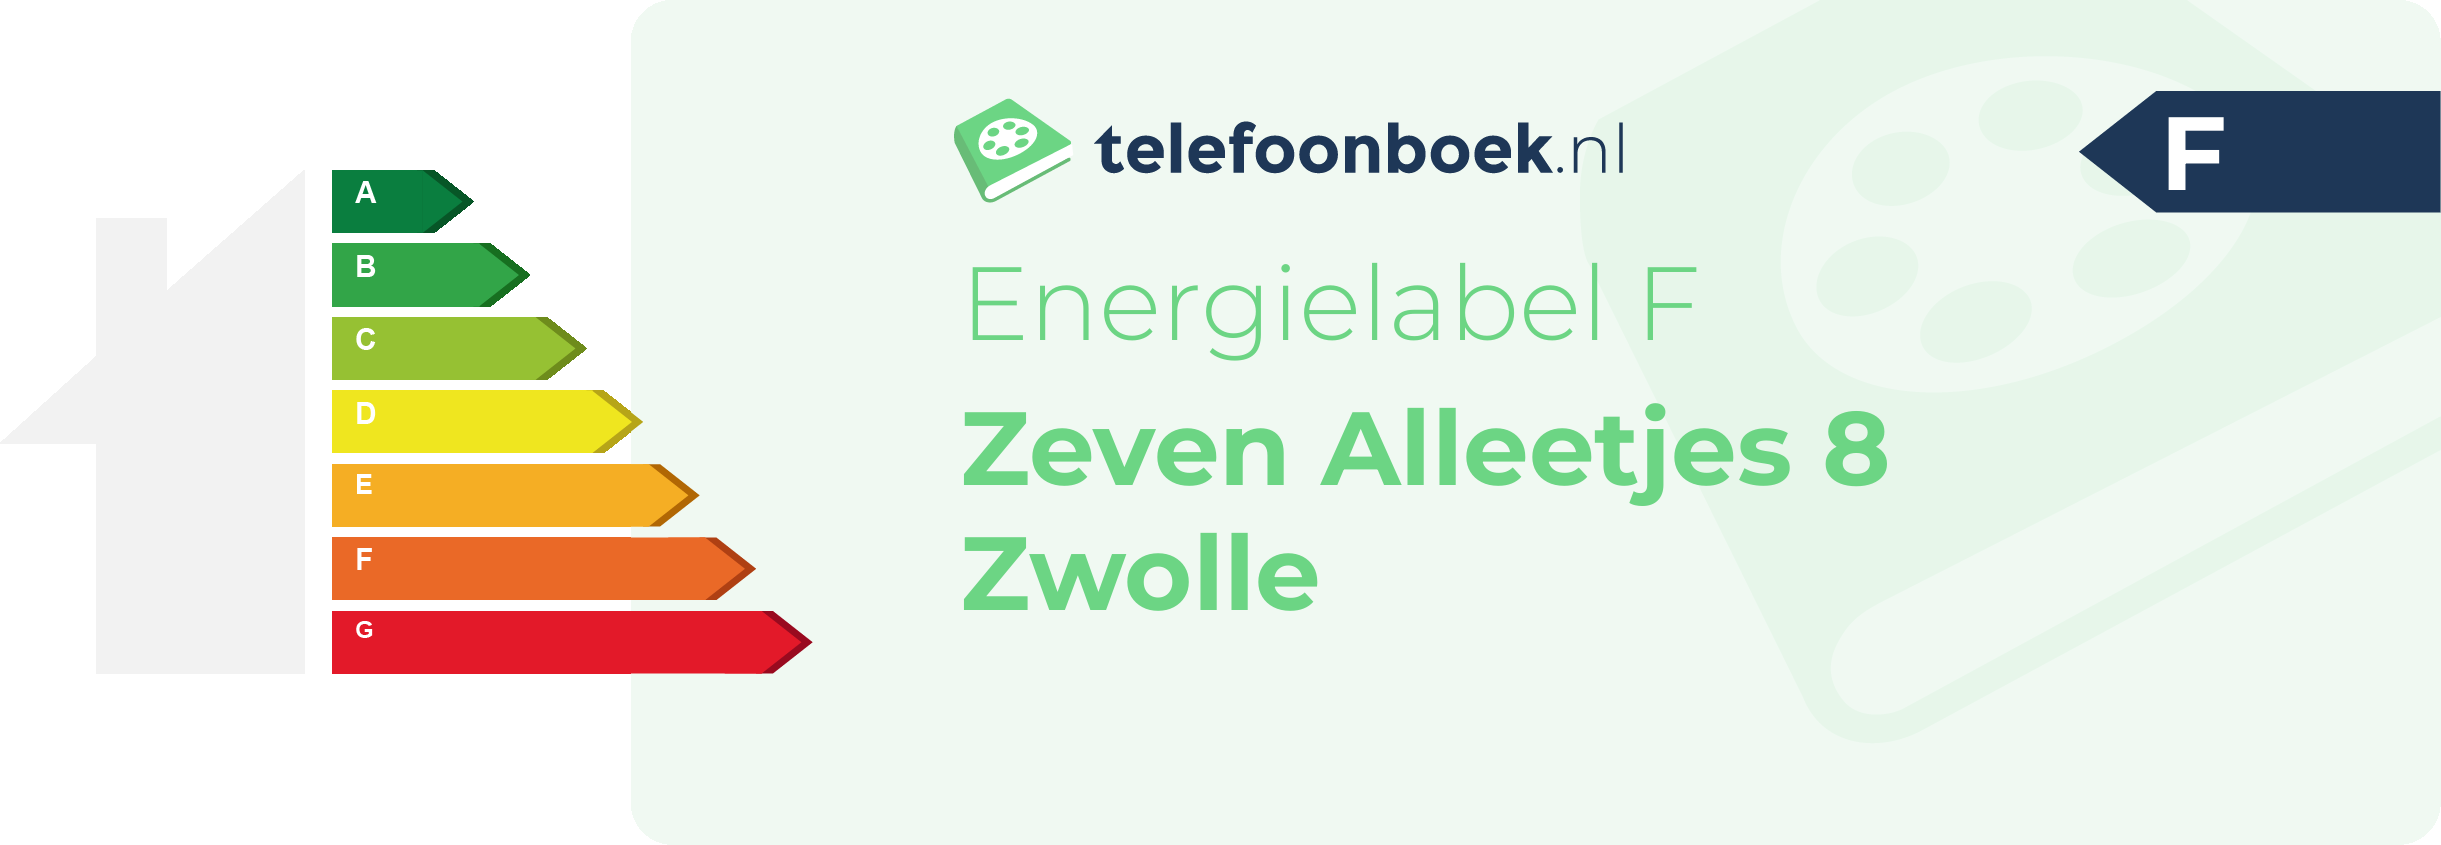 Energielabel Zeven Alleetjes 8 Zwolle